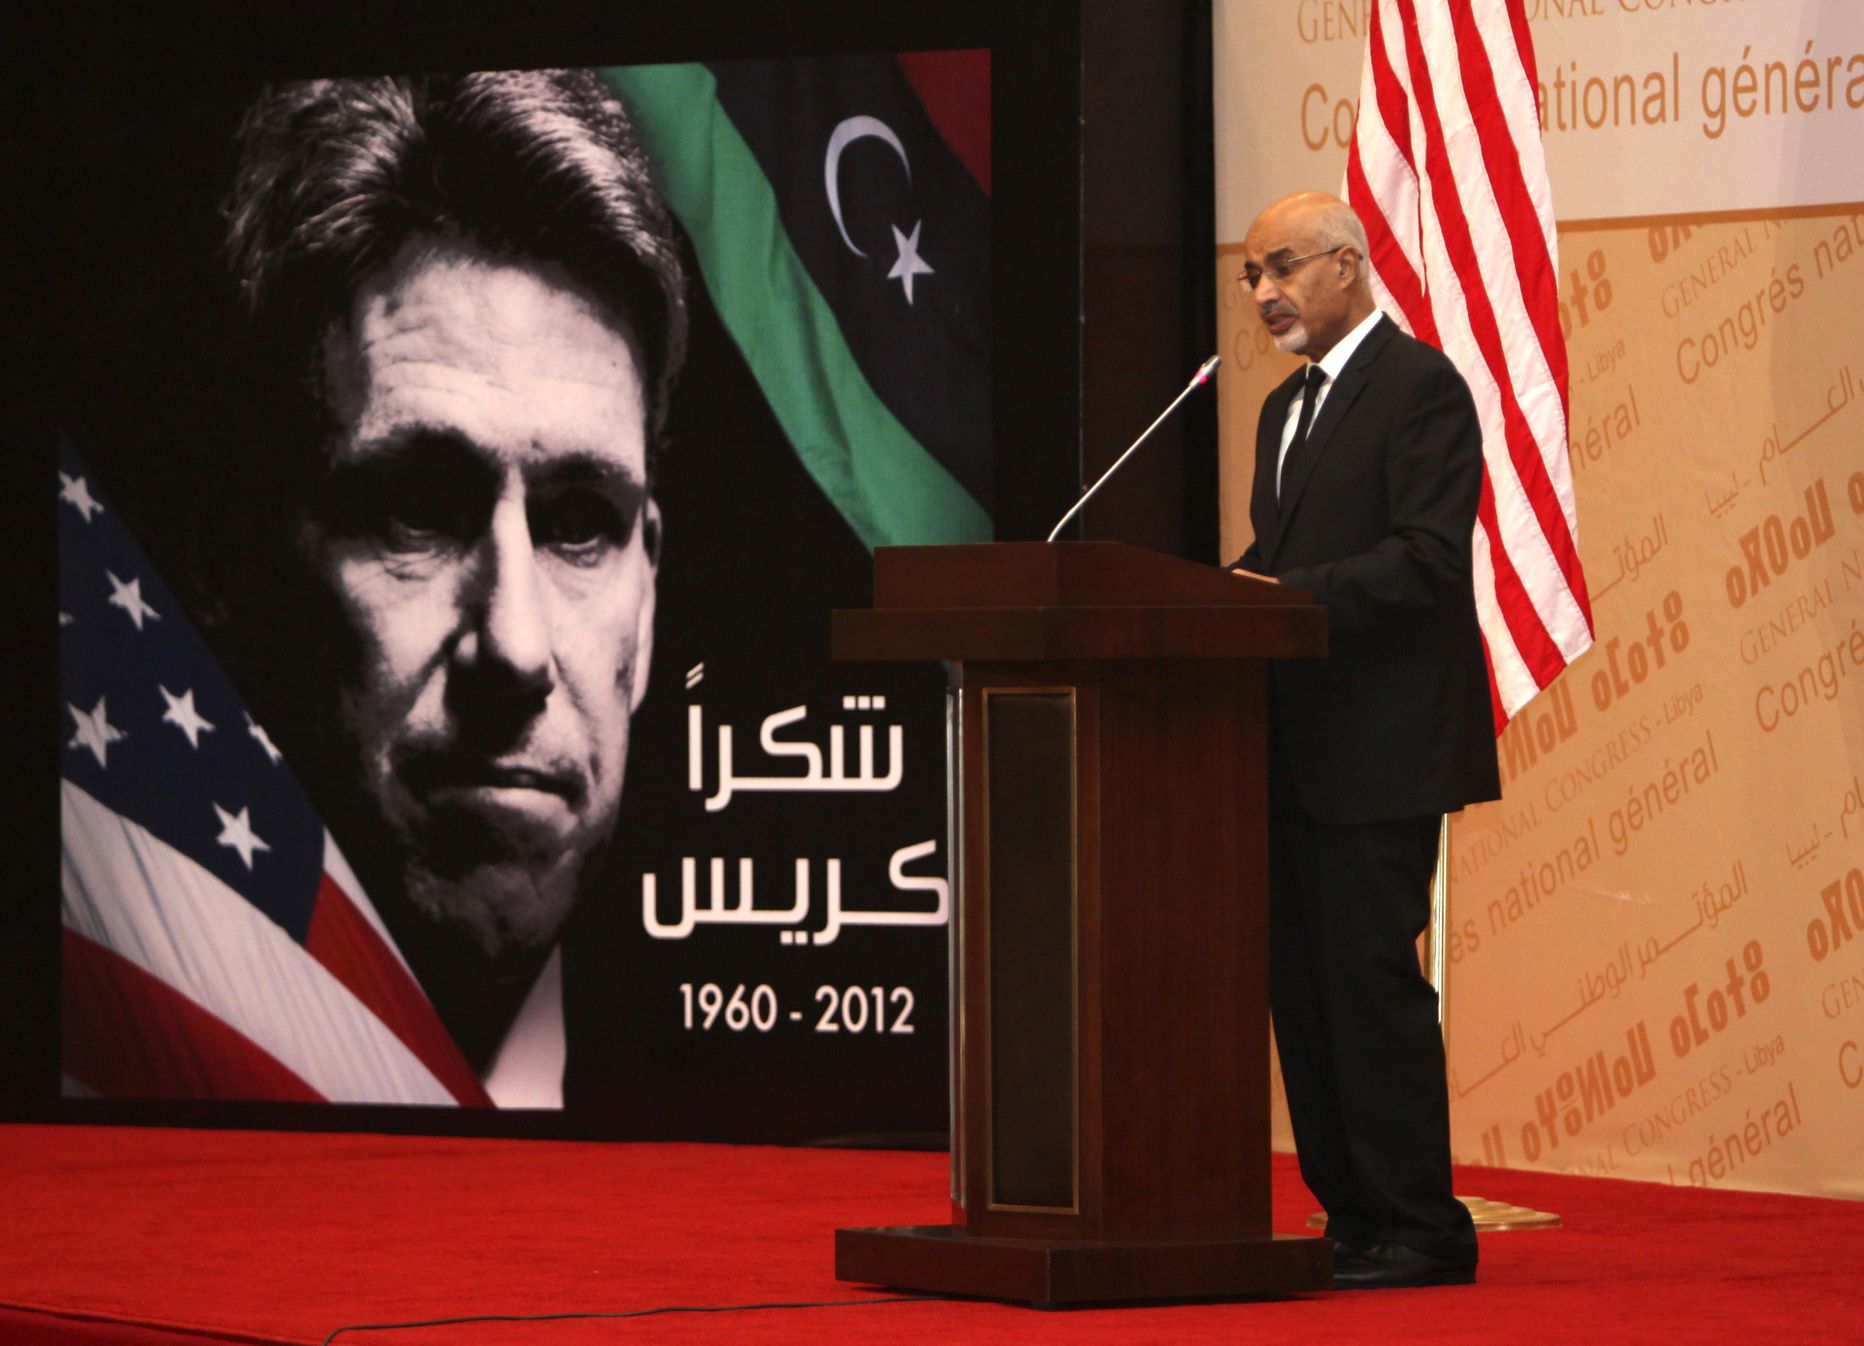 Liibüa presidendi Mohammed el-Megarifi järelhüüe  USA Liibüa suursaadikule Chris Stevensile, kes hukkus konsulaadi rünnakus